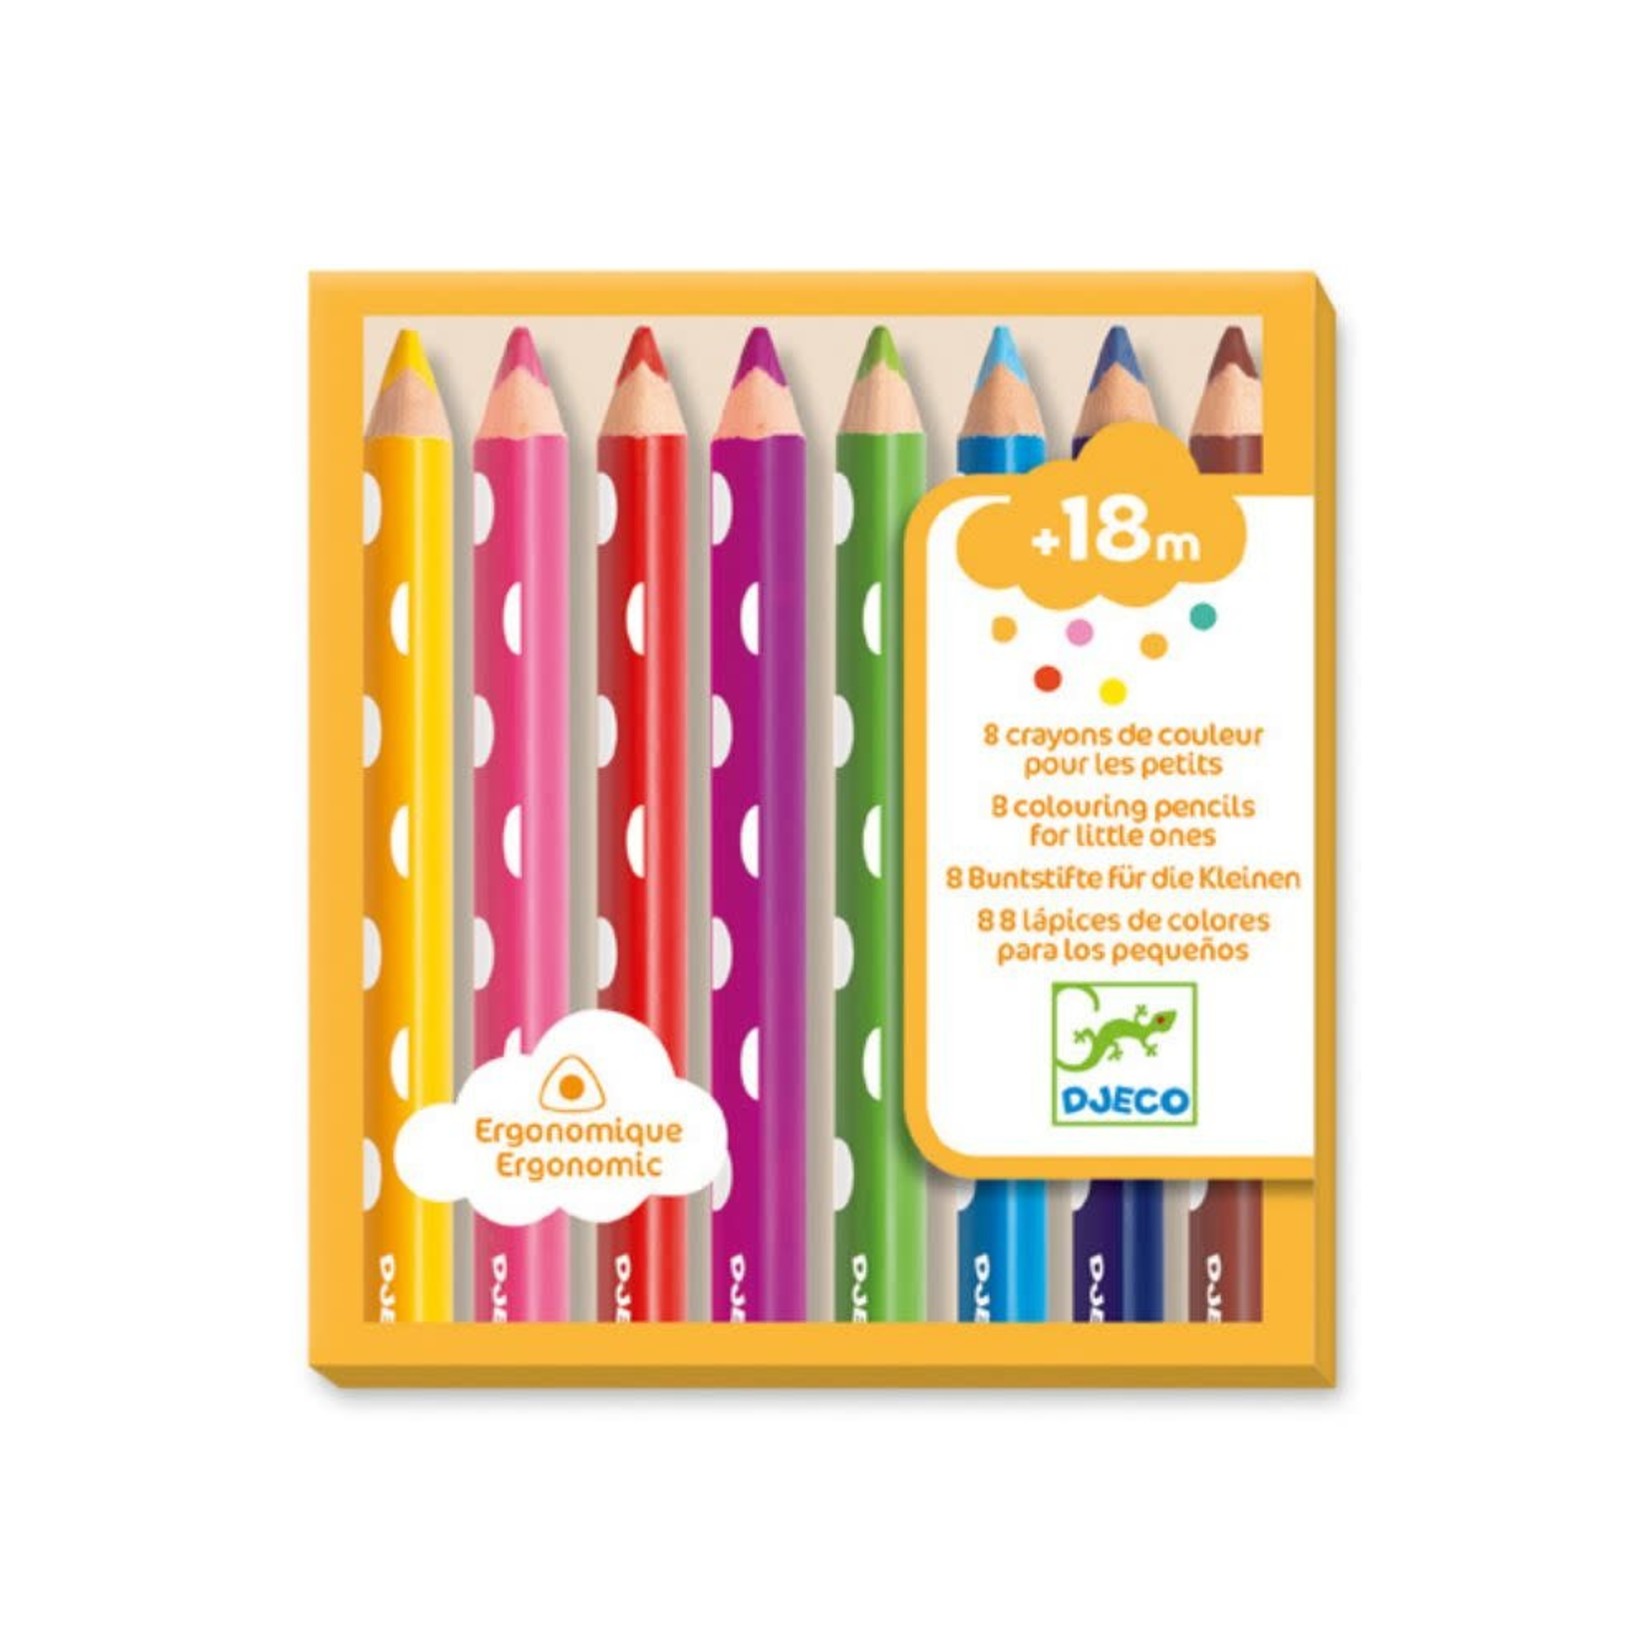 Djeco 8 crayons de couleur pour les petits